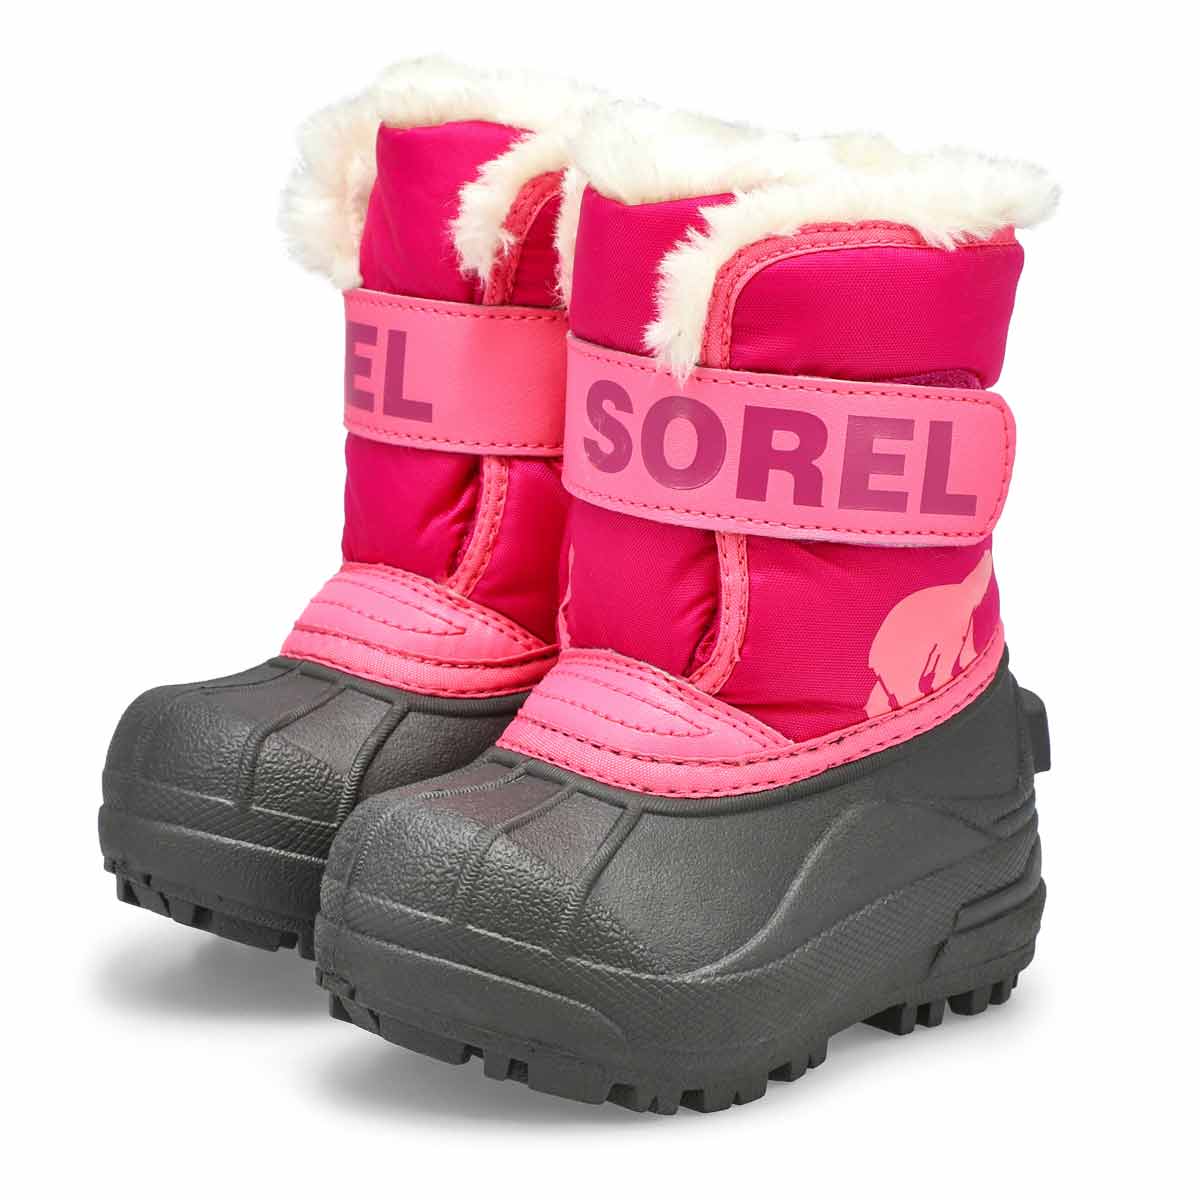 Bottes SNOW COMMANDER, rose/rosé, petites filles